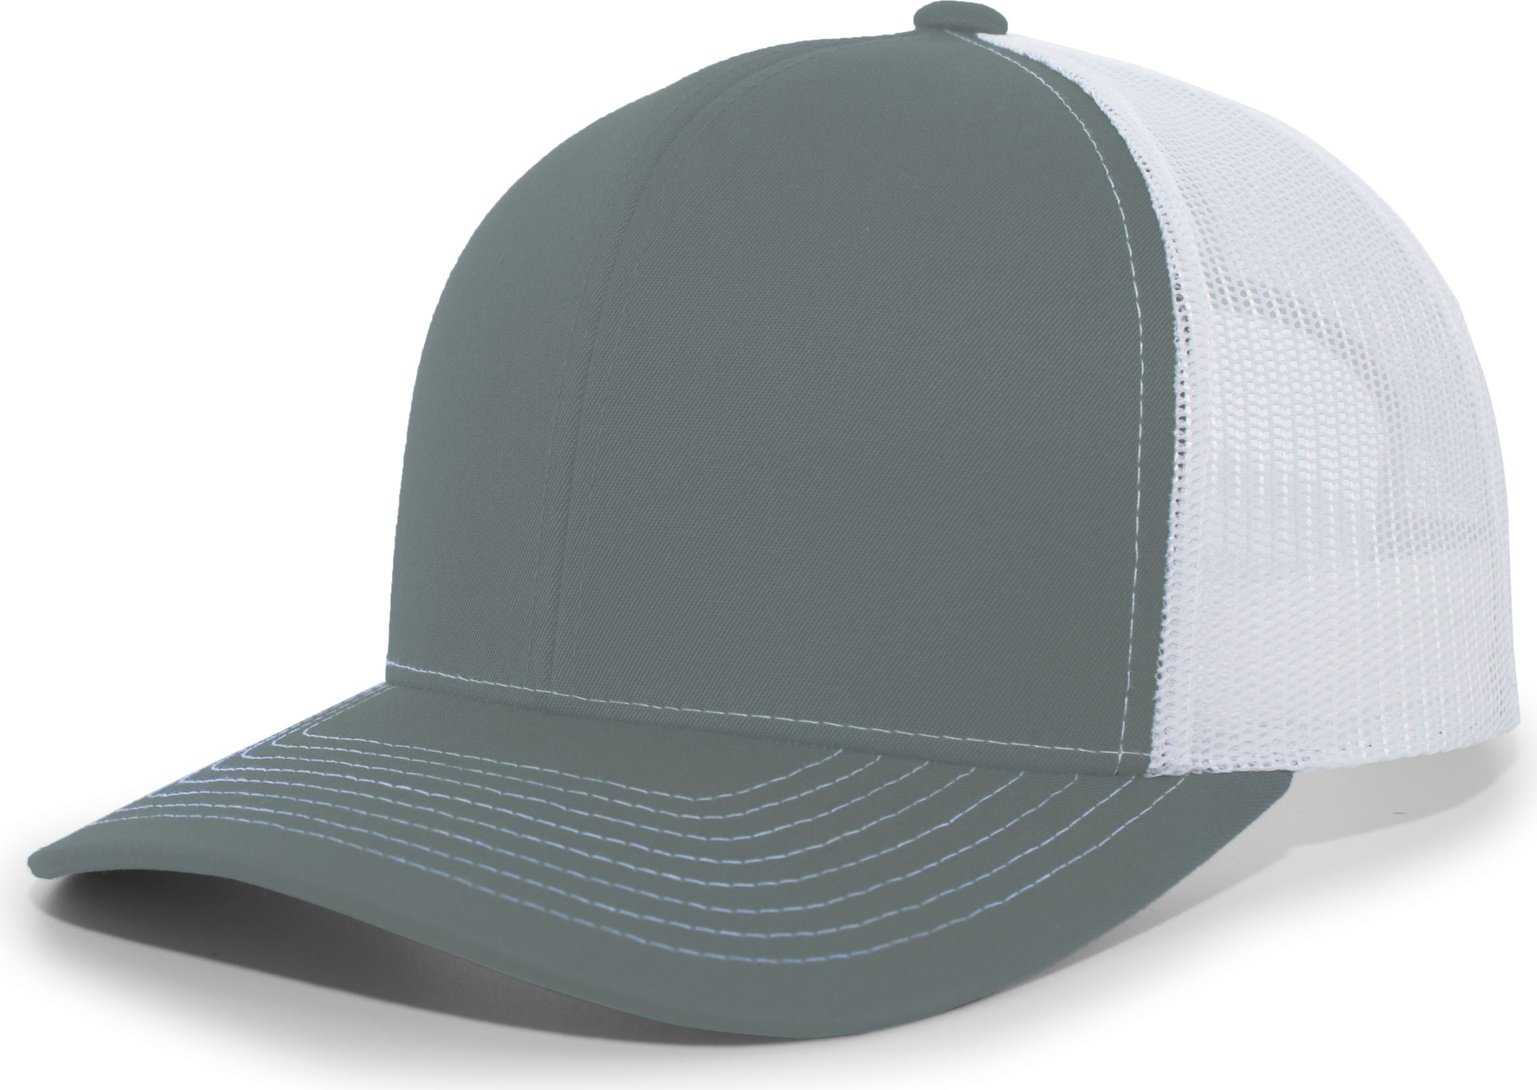 Pacific Headwear 104S Contrast Stitch Snapback Trucker Cap - Graphite White Graphite - HIT a Double